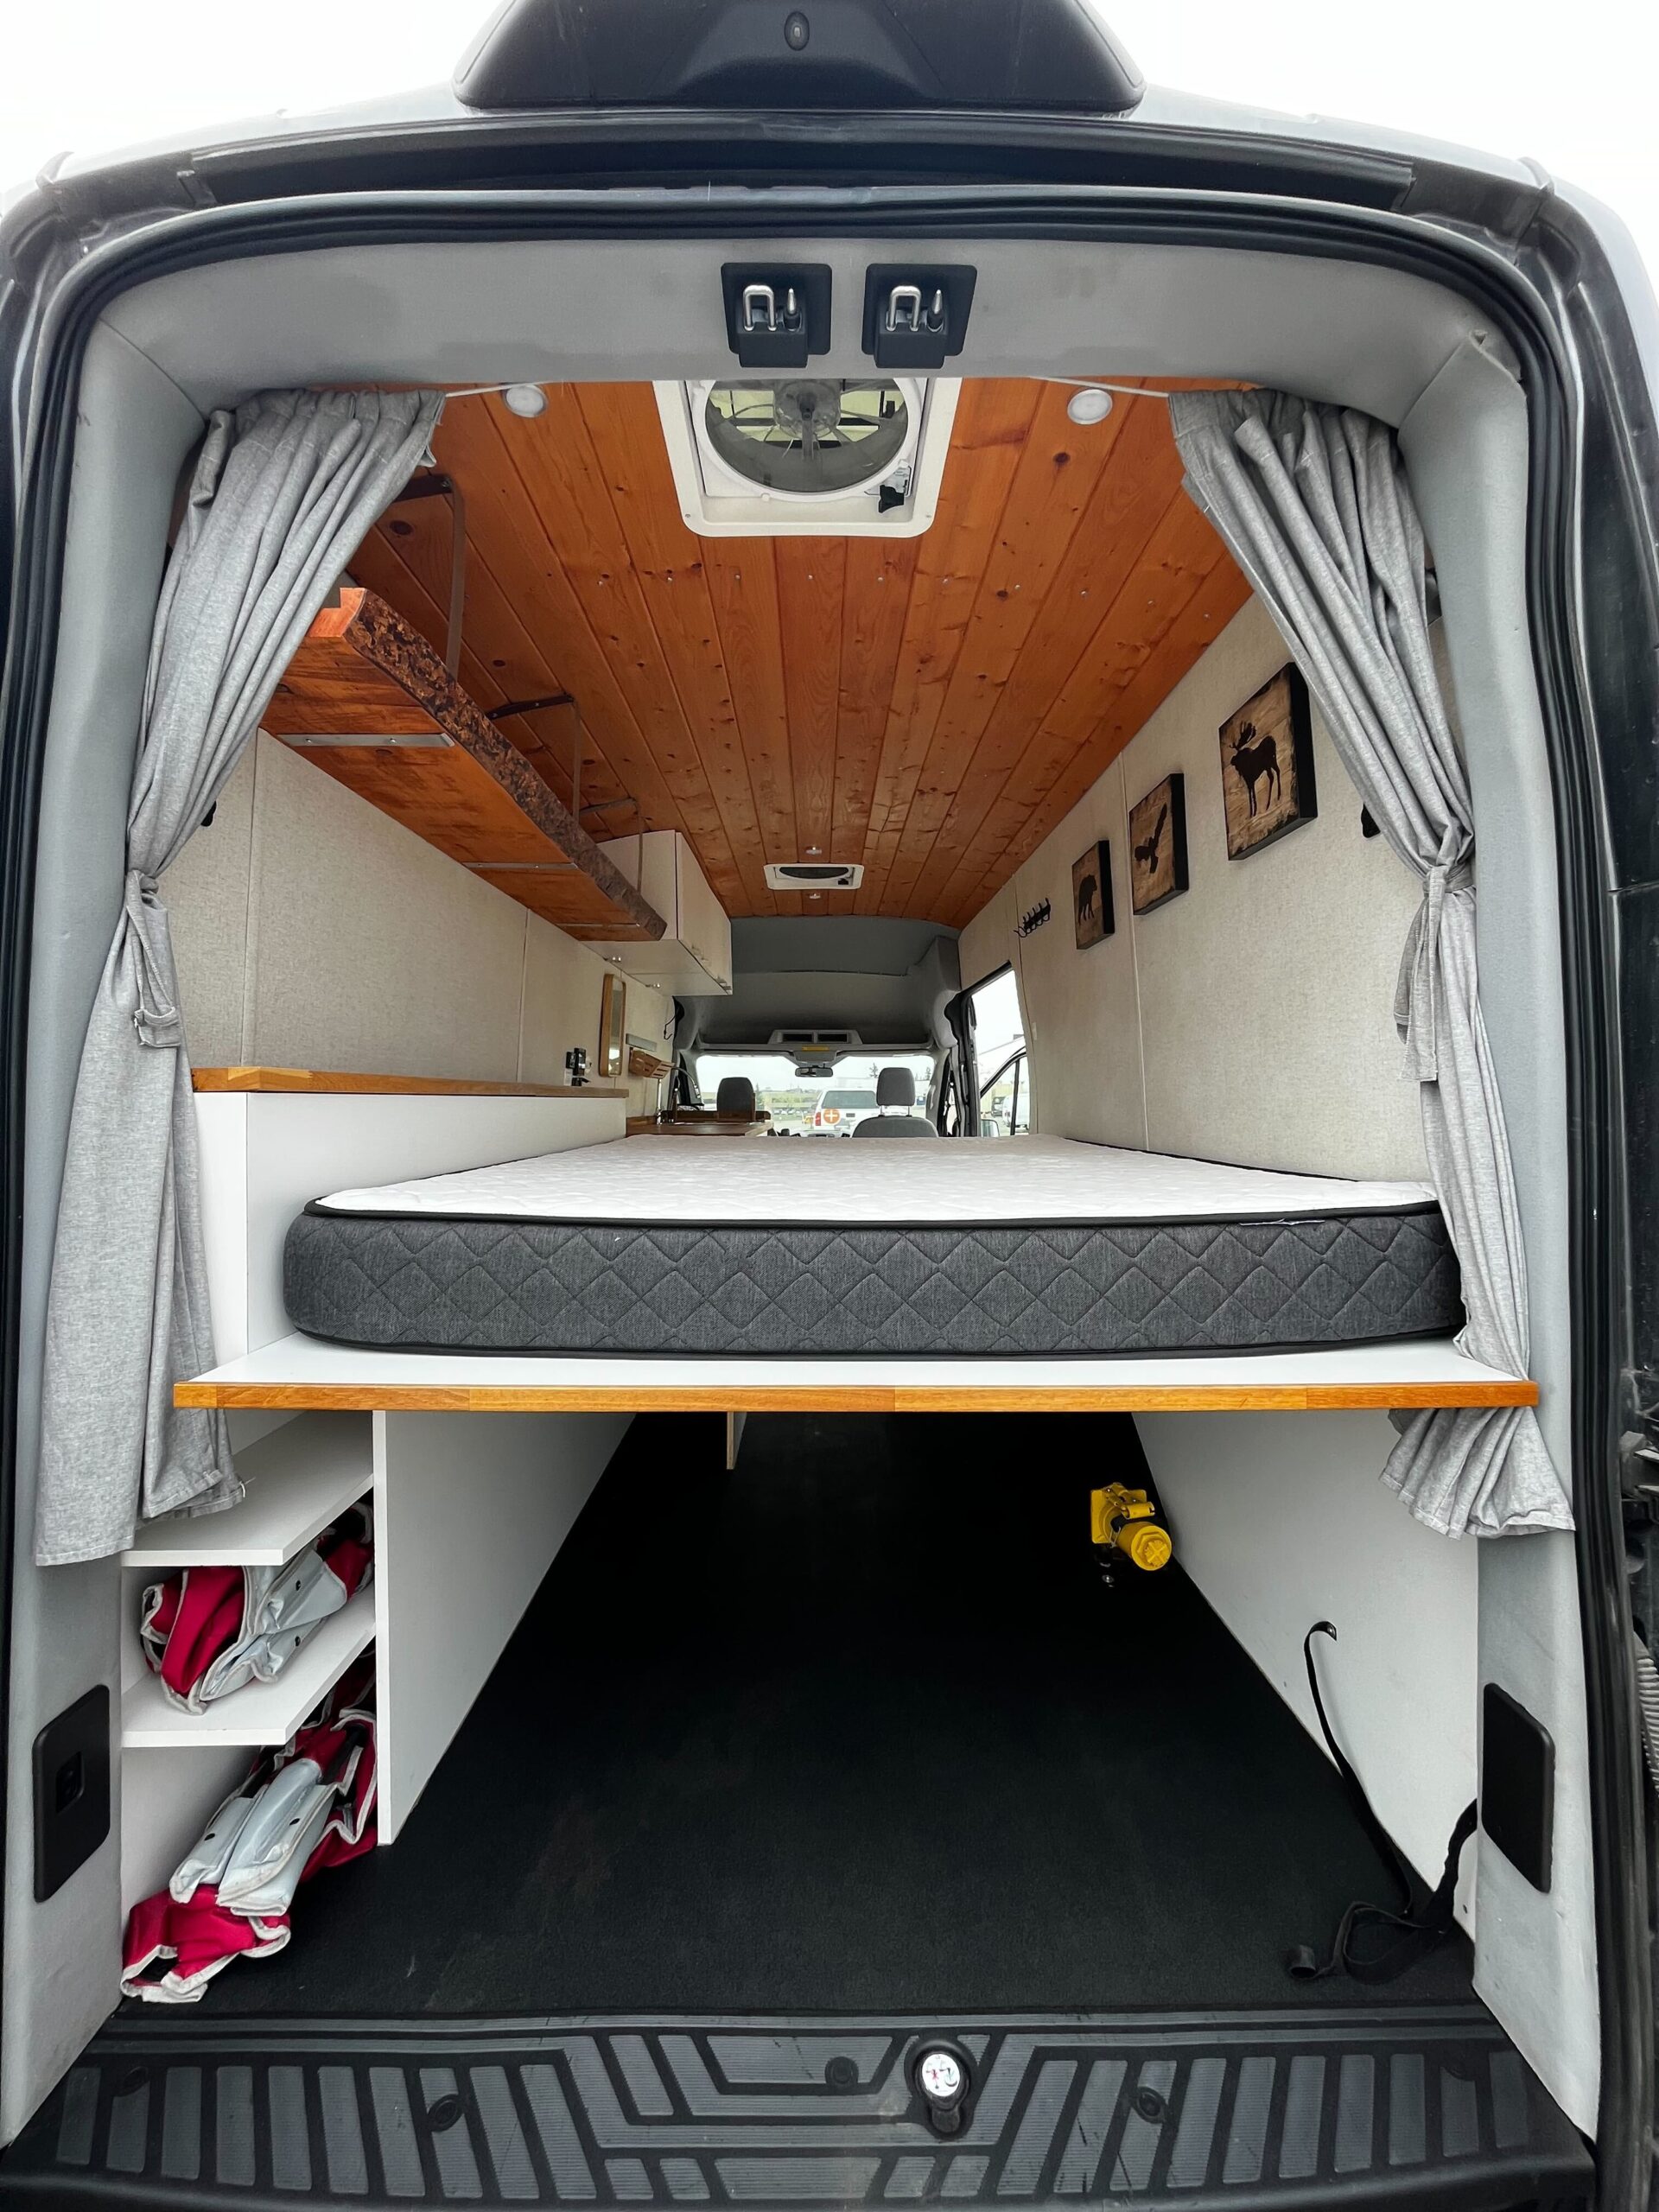 back of a camper van with a mattress